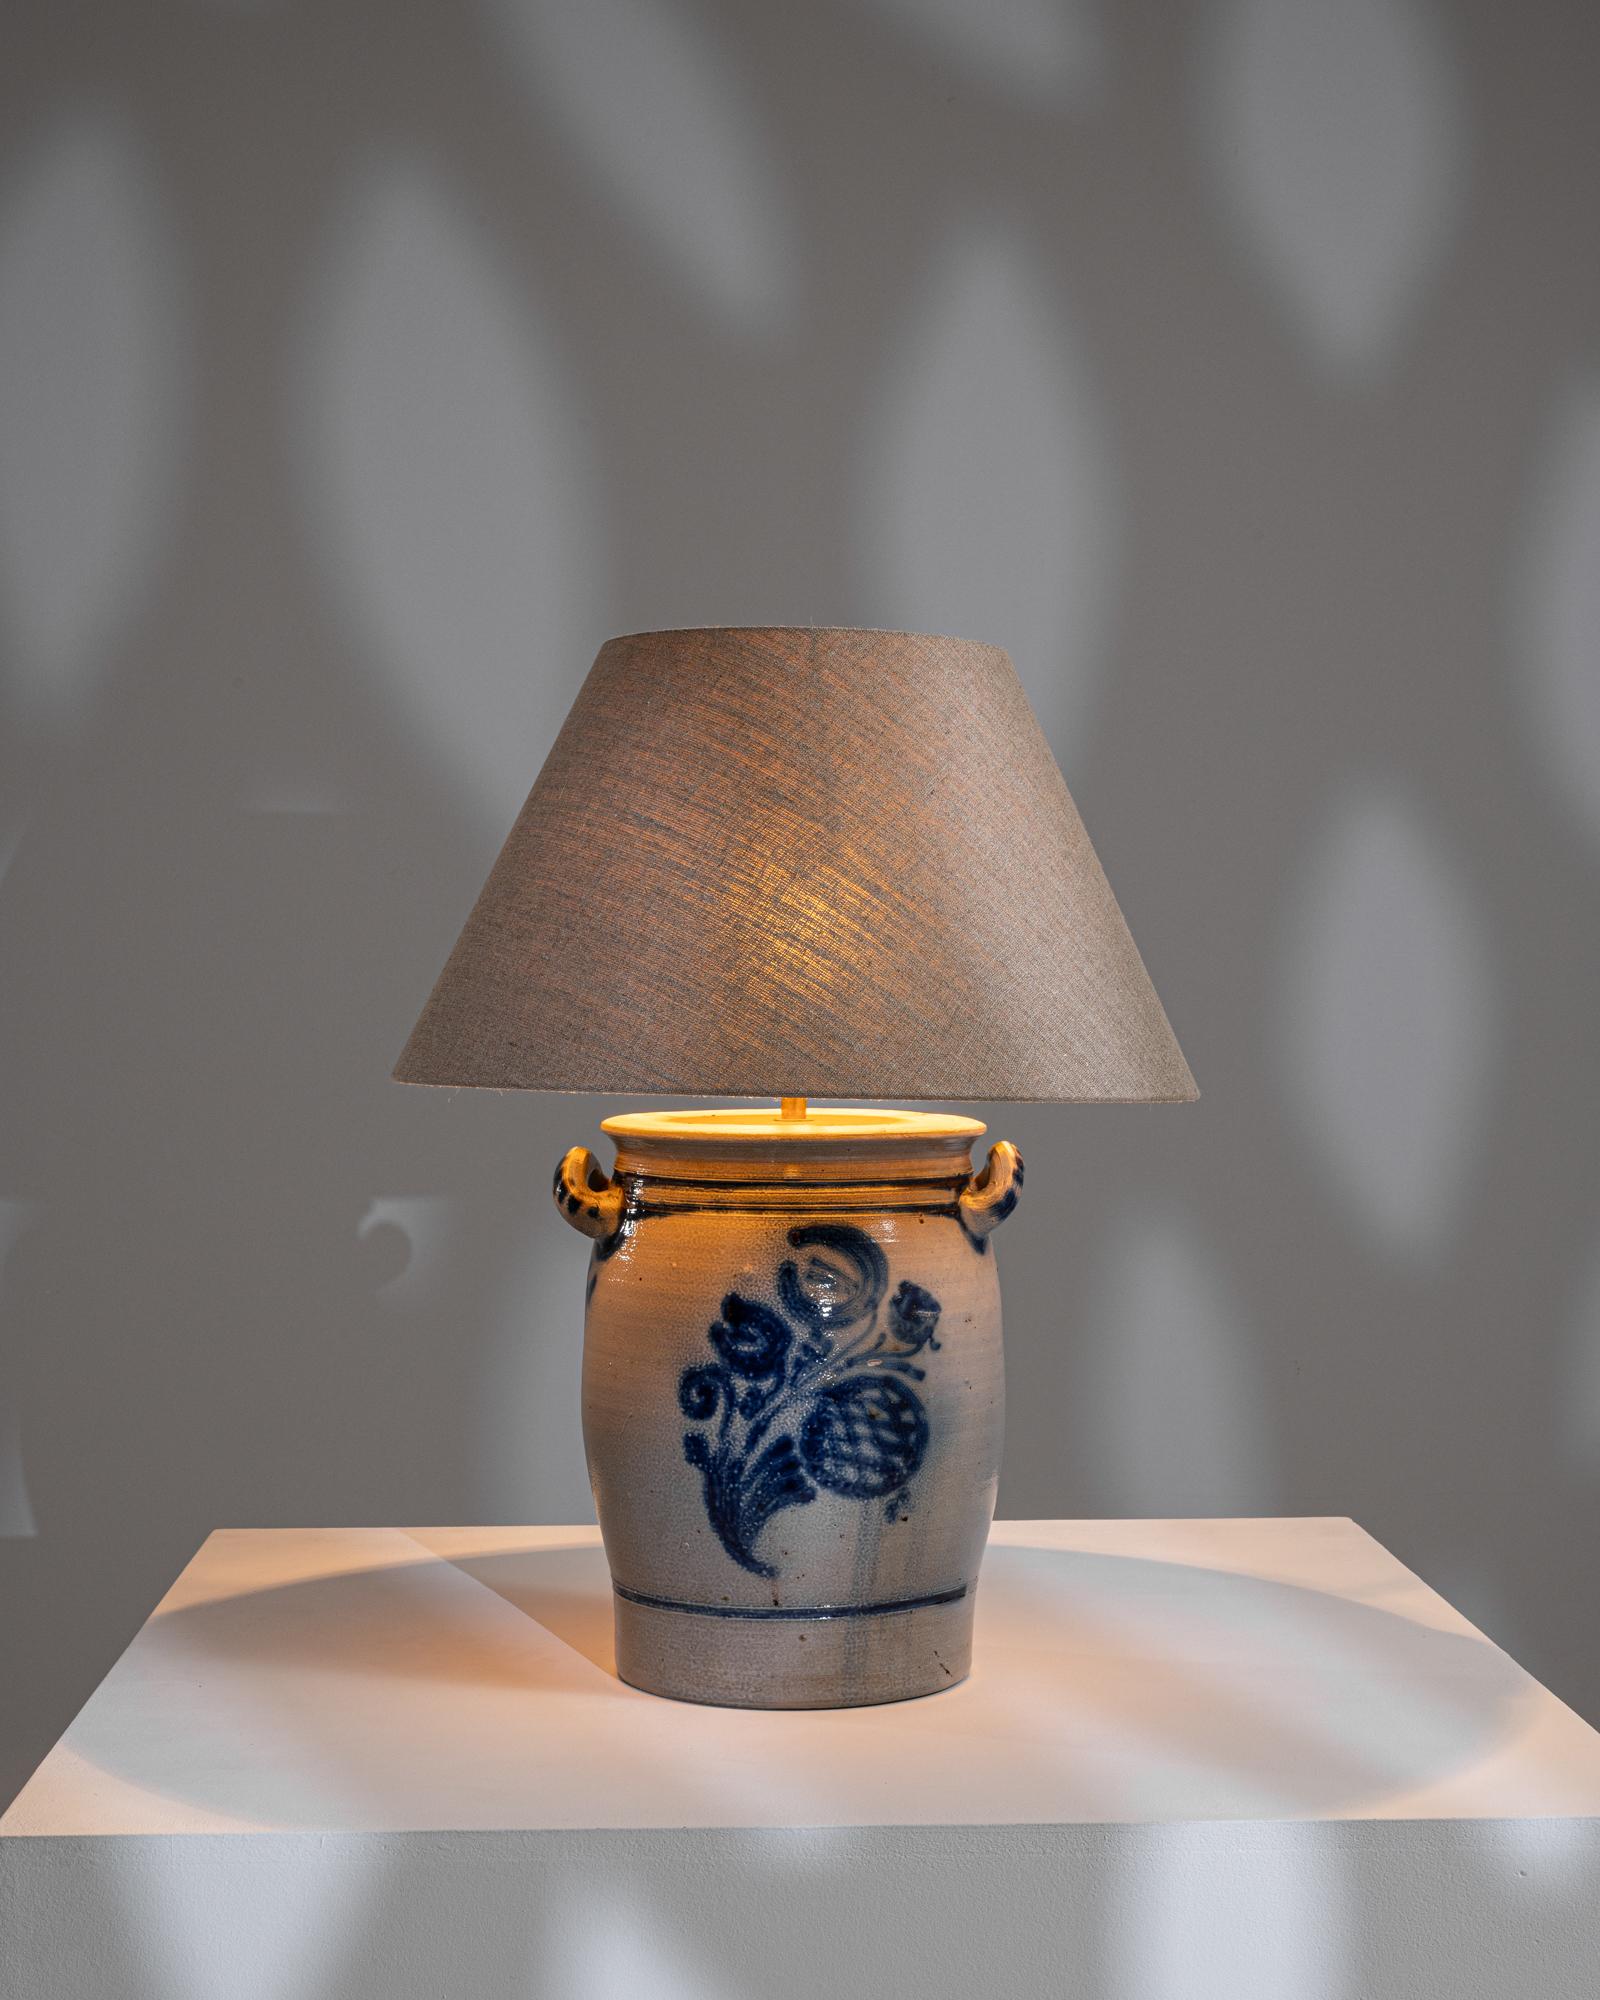 20th Century 1900s Belgian Ceramic Table Lamp